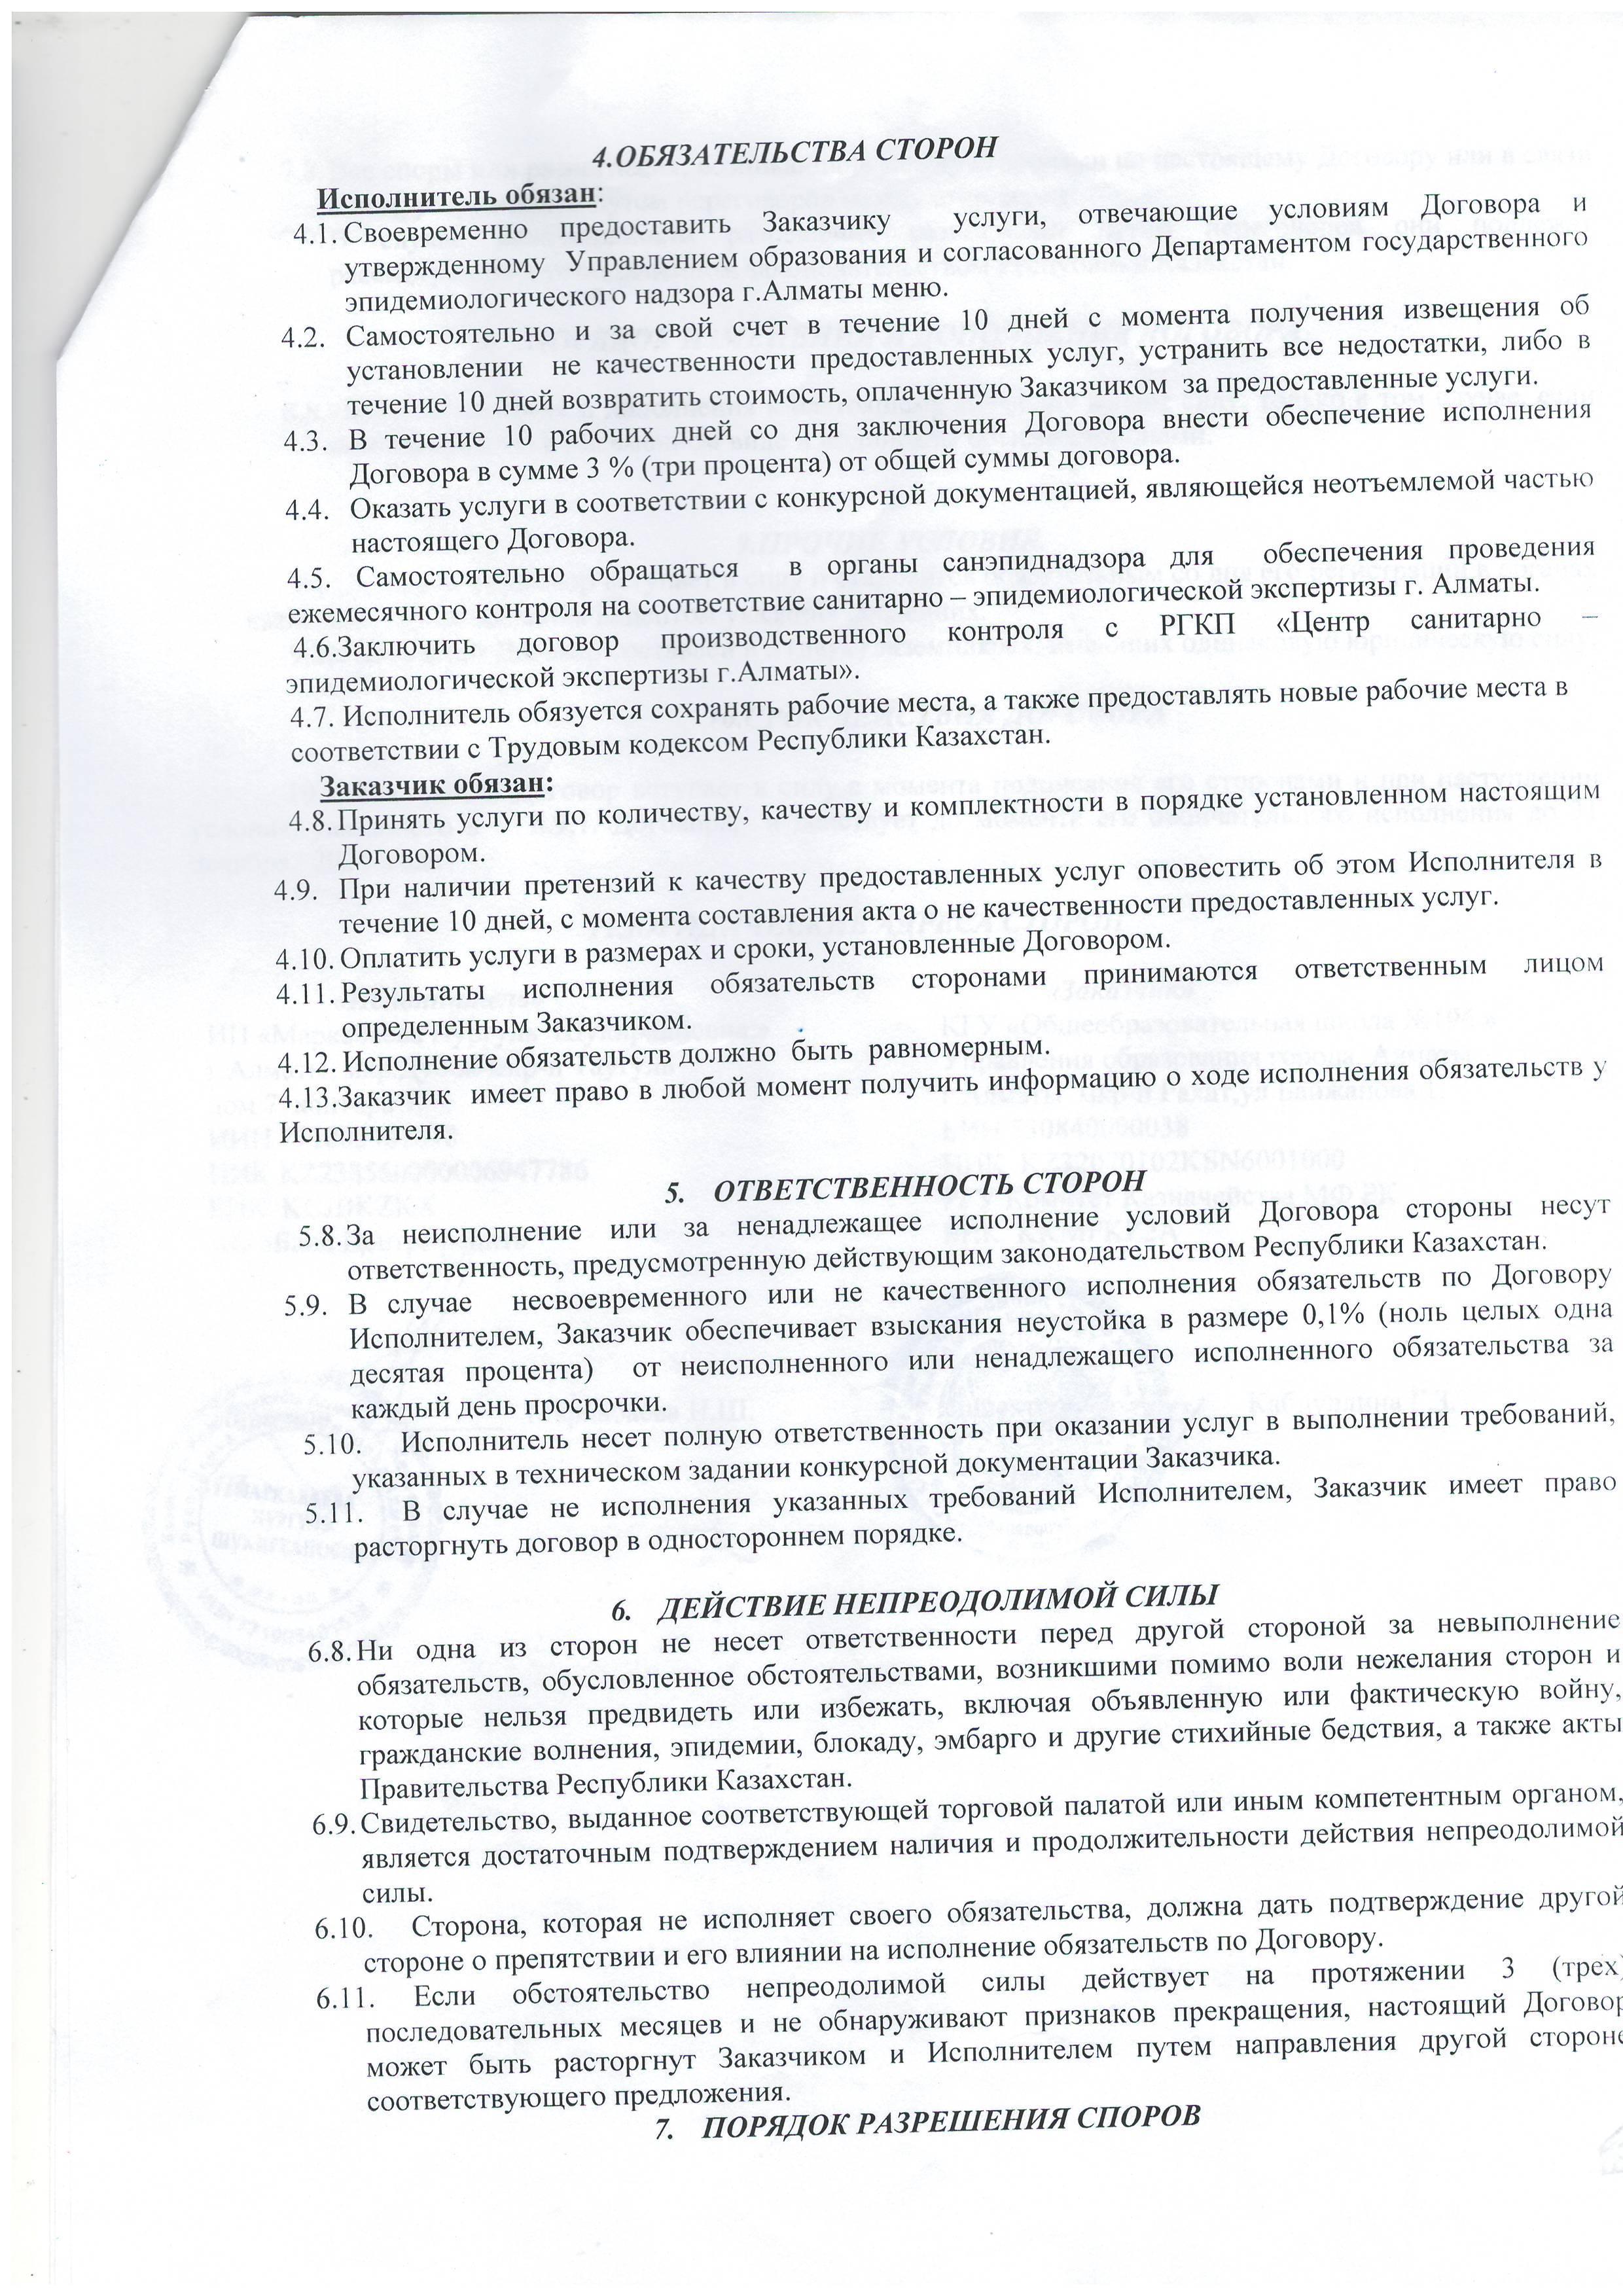 Договор  № 1 в соответствии с бюджетной программой "10" августа 2021 г. Алматы.